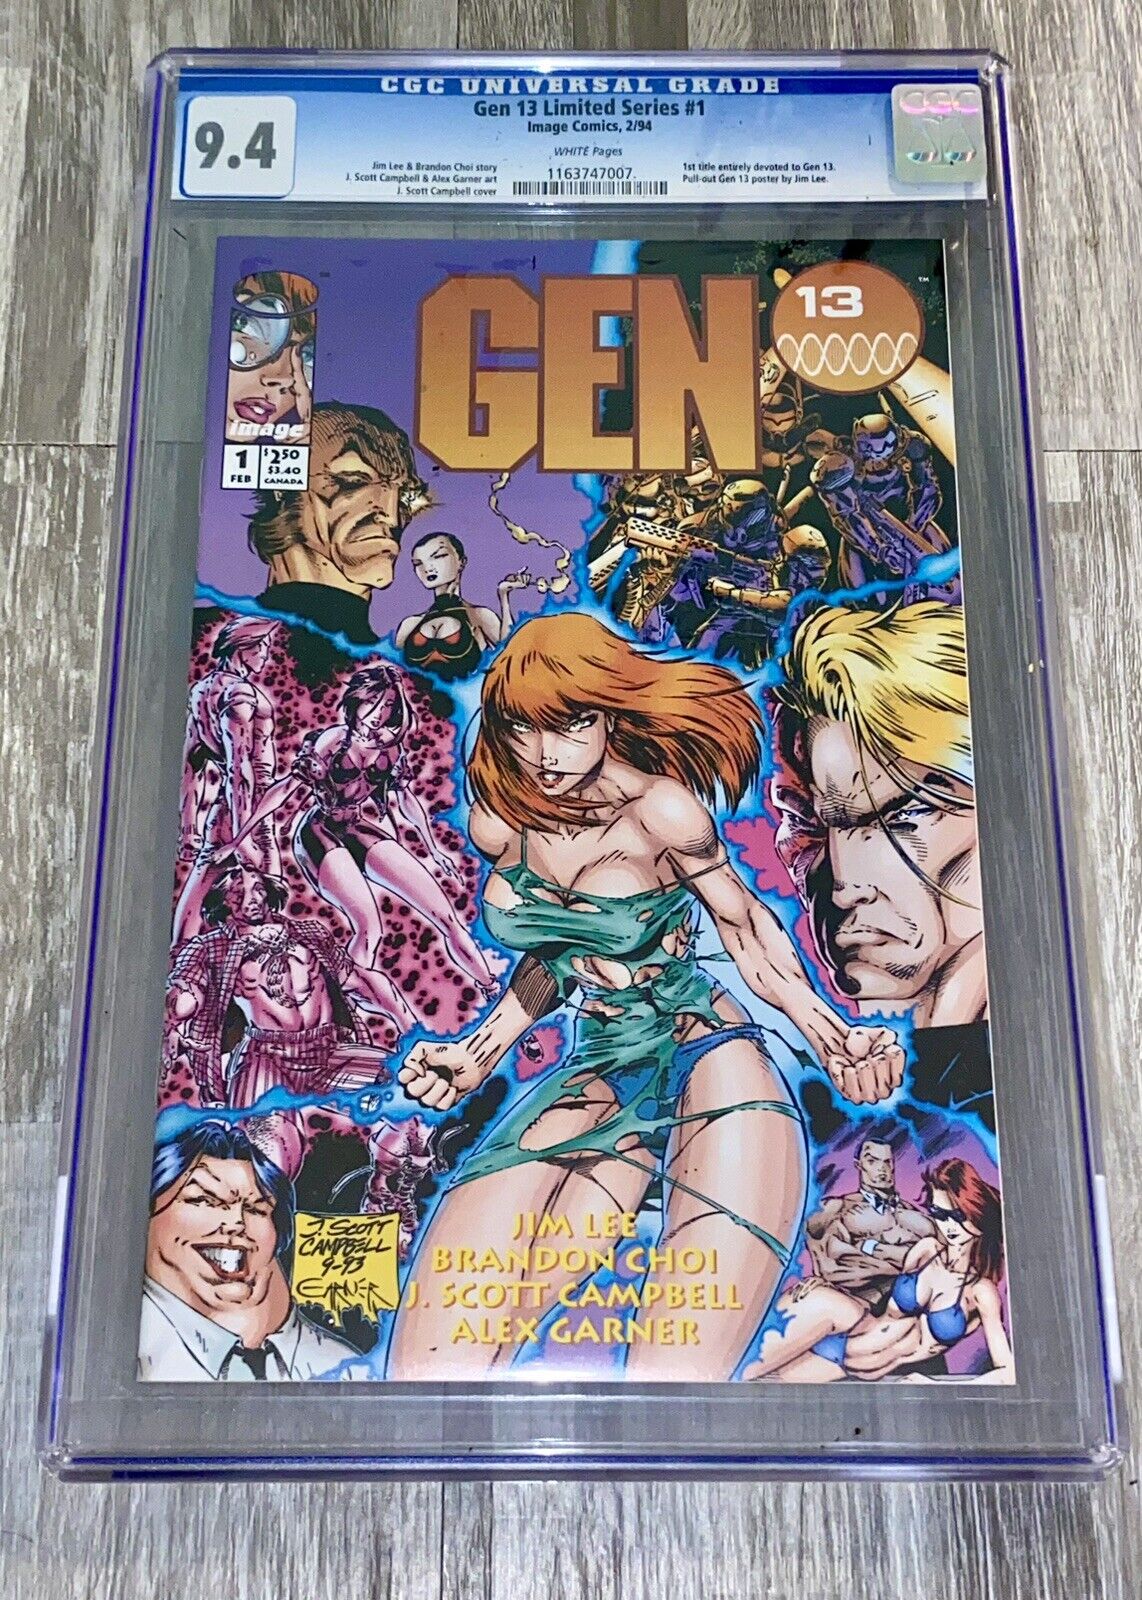 Gen 13 #1 Limited Series Newsstand Edition CGC 9.4